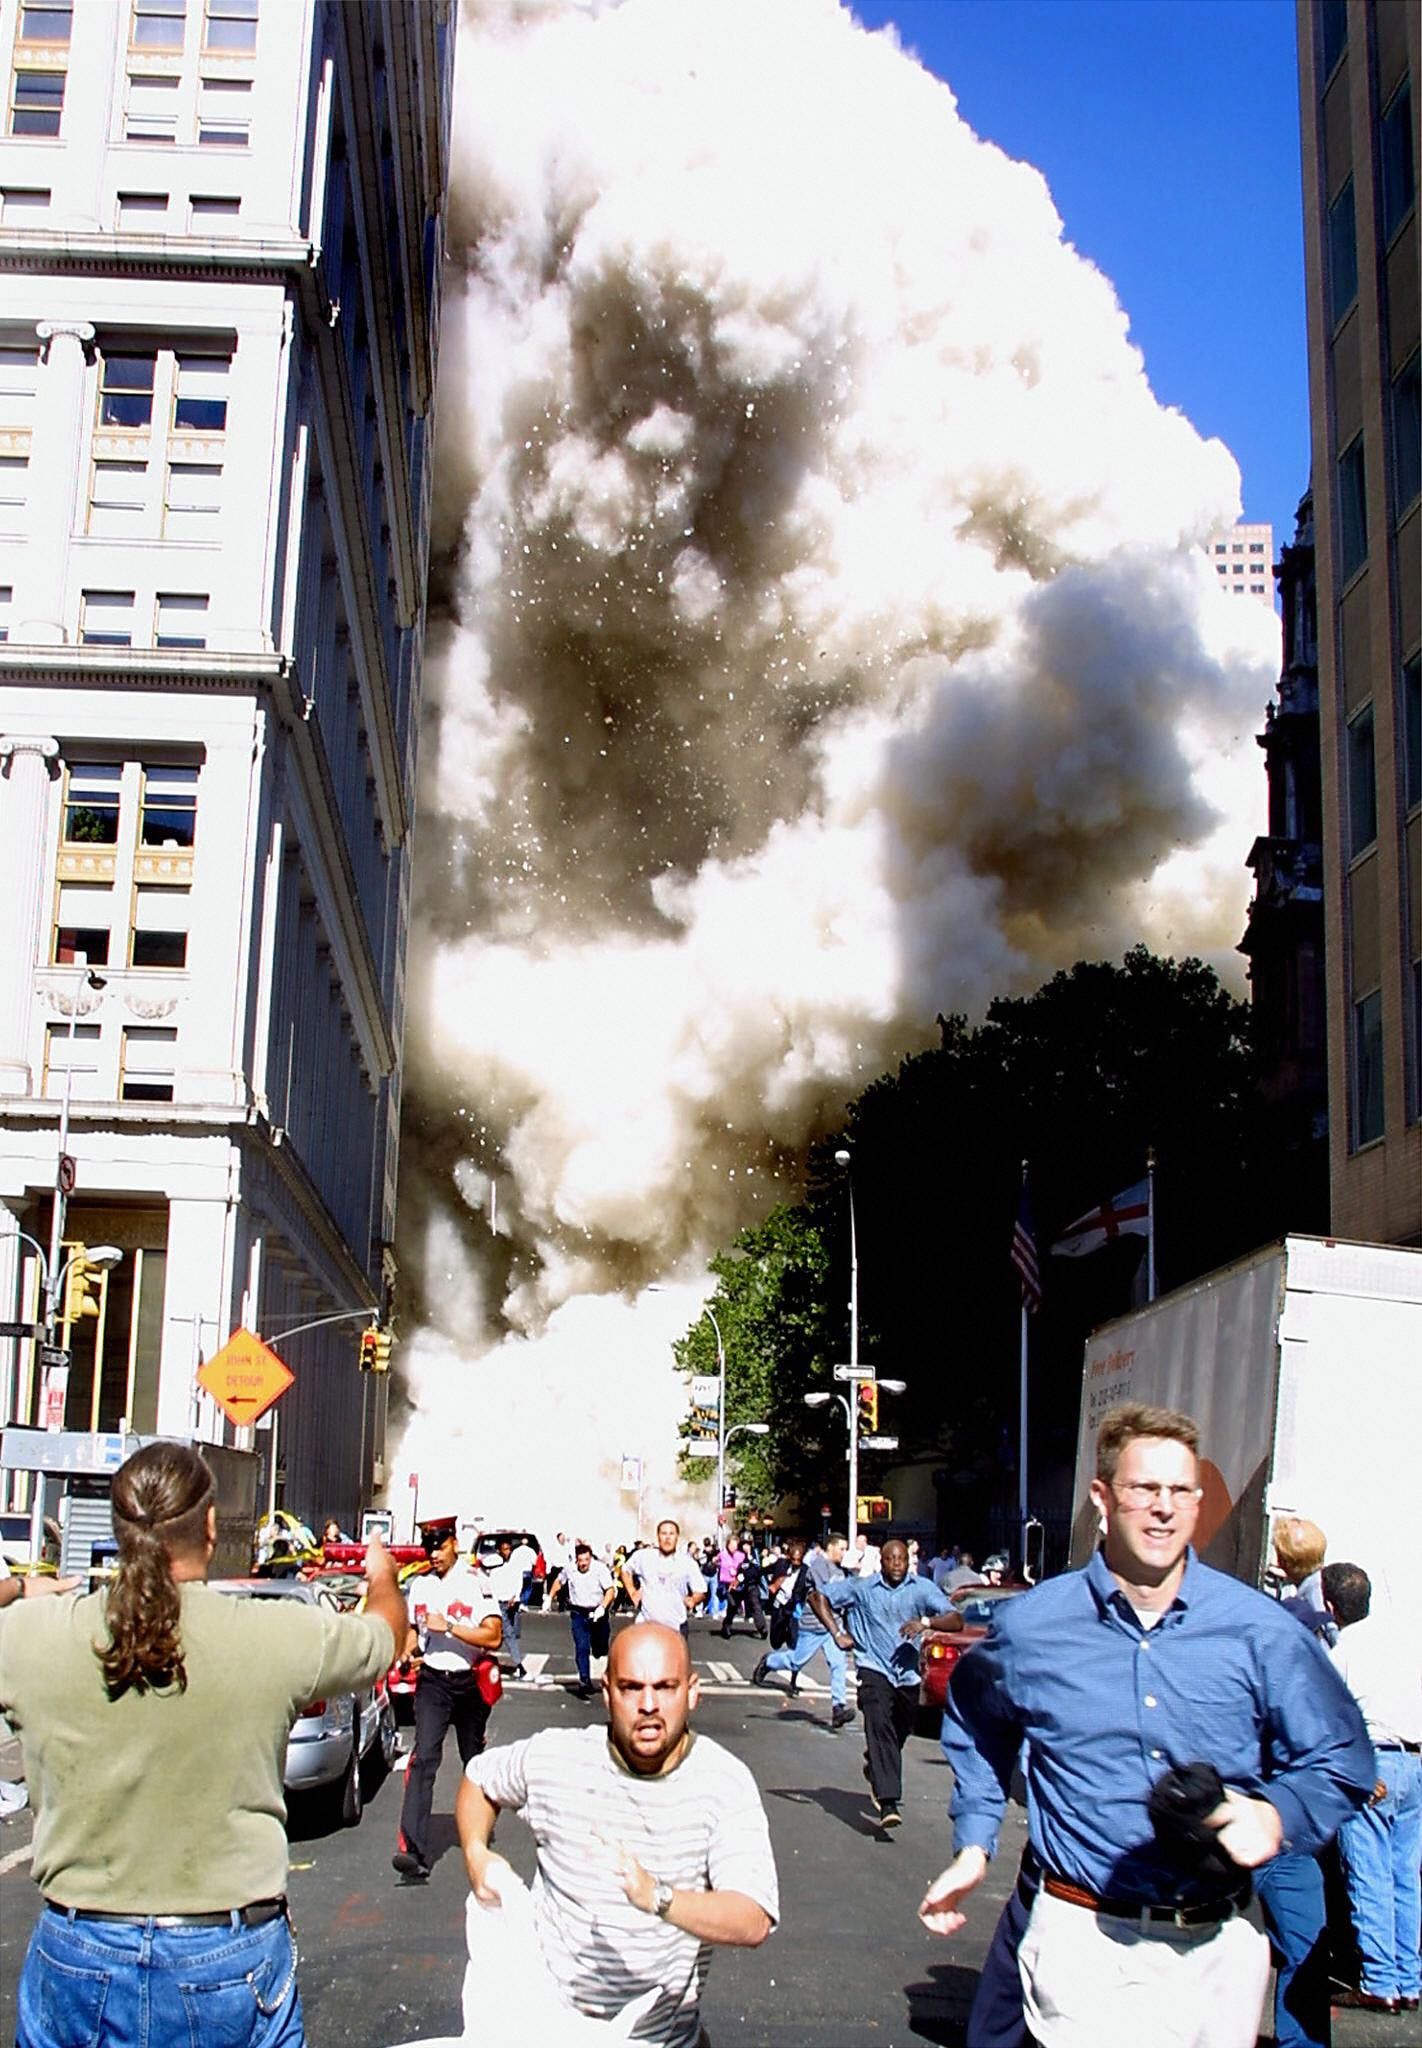 Pedoni che scappano dalla scena del crollo di una delle torri del World Trade Center. Gli attentati si svolgono praticamente in diretta televisiva, con milioni di persone in tutto il mondo che seguono questi drammatici momenti sui vari mezzi di comunicazione